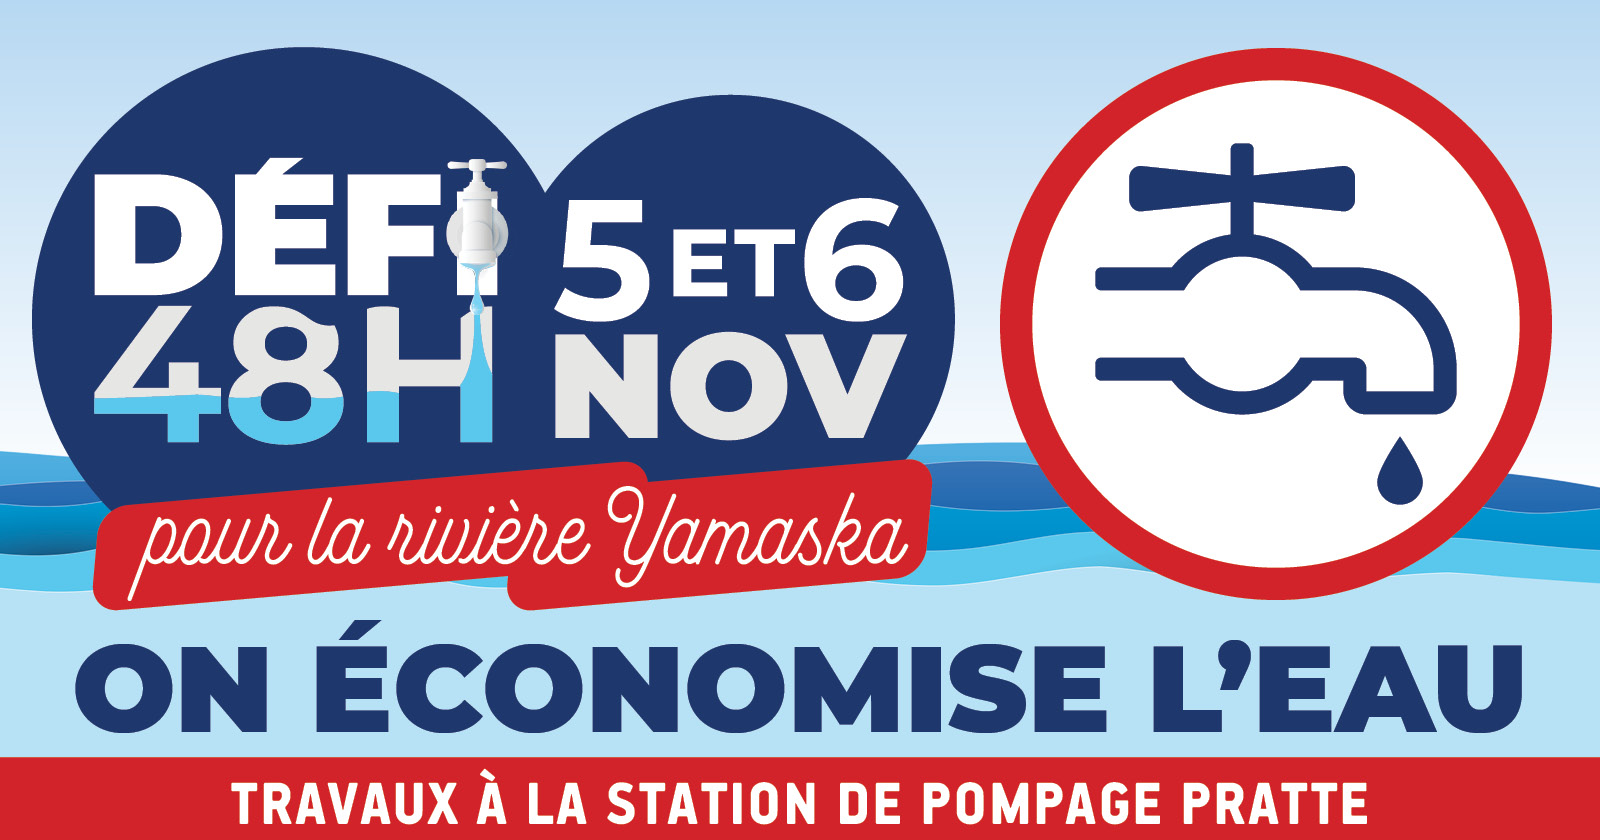 Mise à l'arrêt temporaire de la station Pratte - Les 5 et 6 novembre, on économise l'eau!